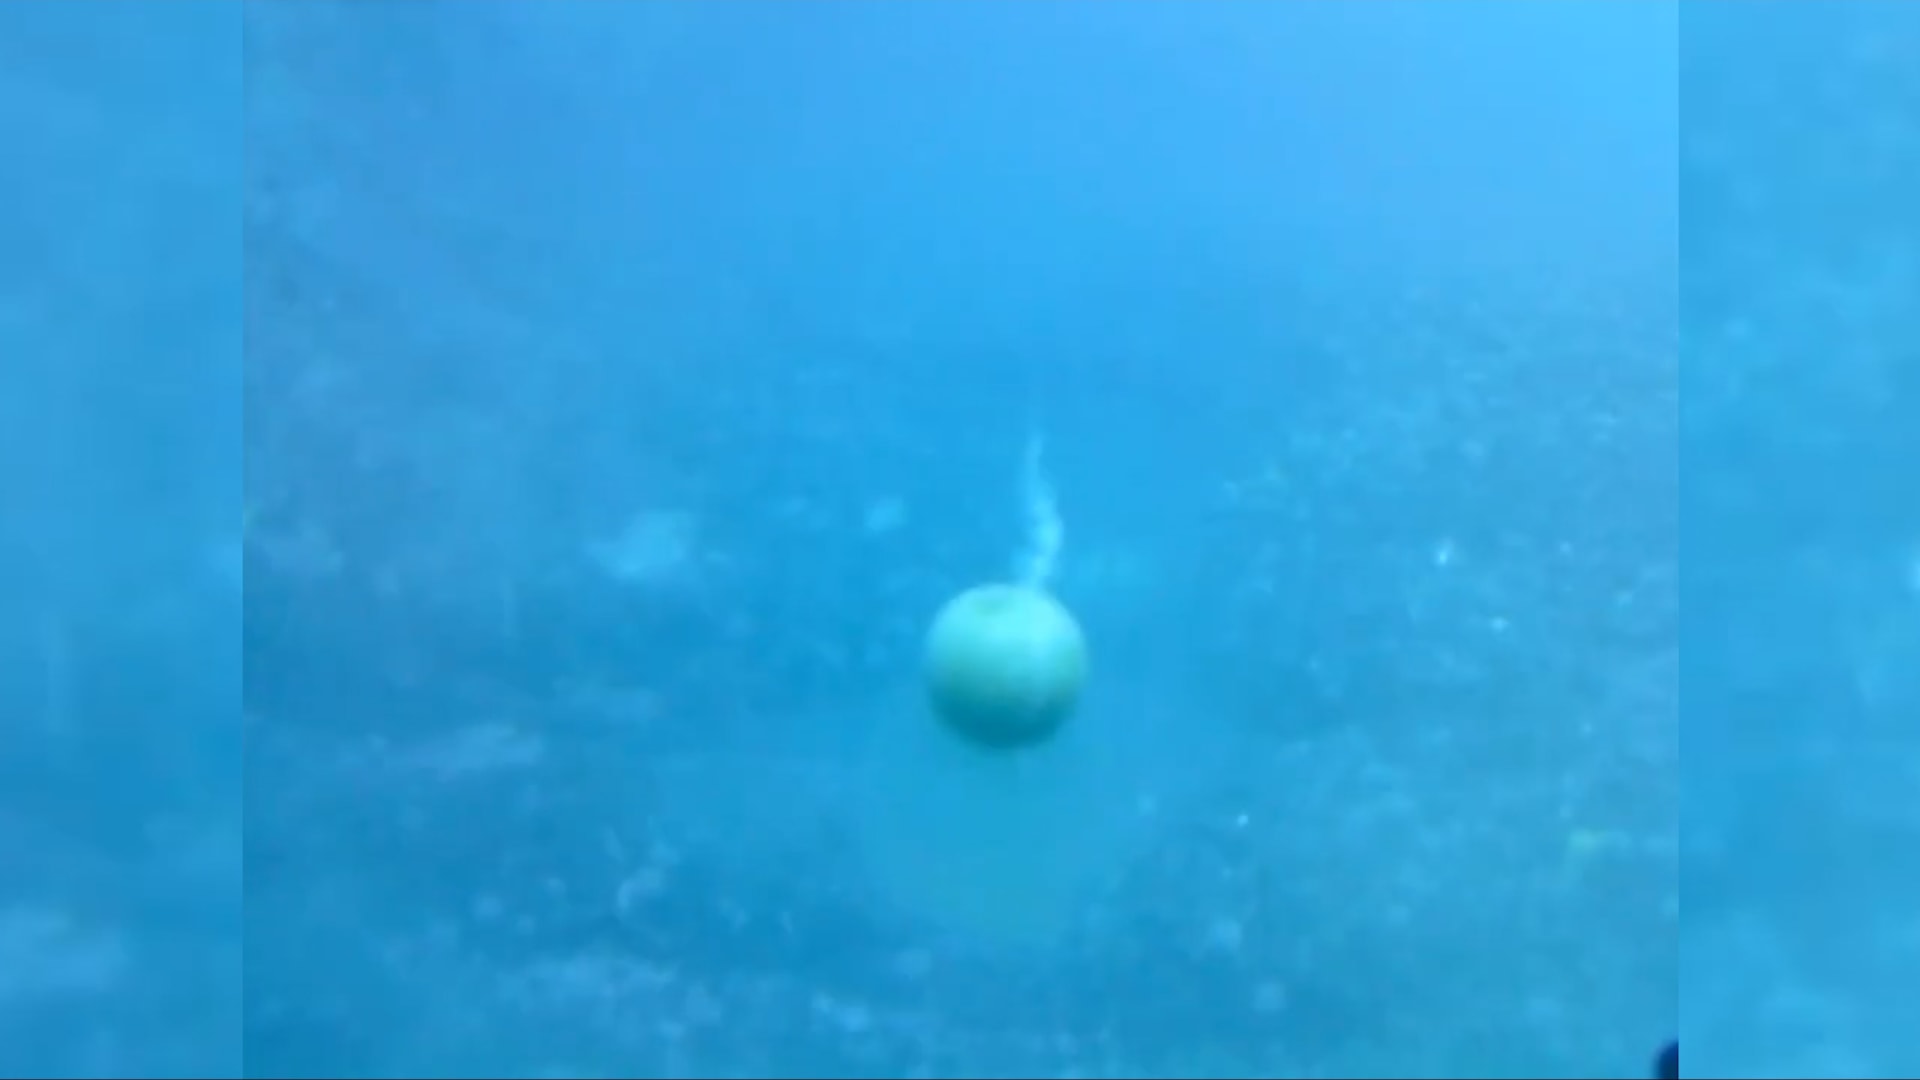 ماذا حصل عندما فقس هذا الغواص بيضة على عمق 30 مترًا تحت الماء؟